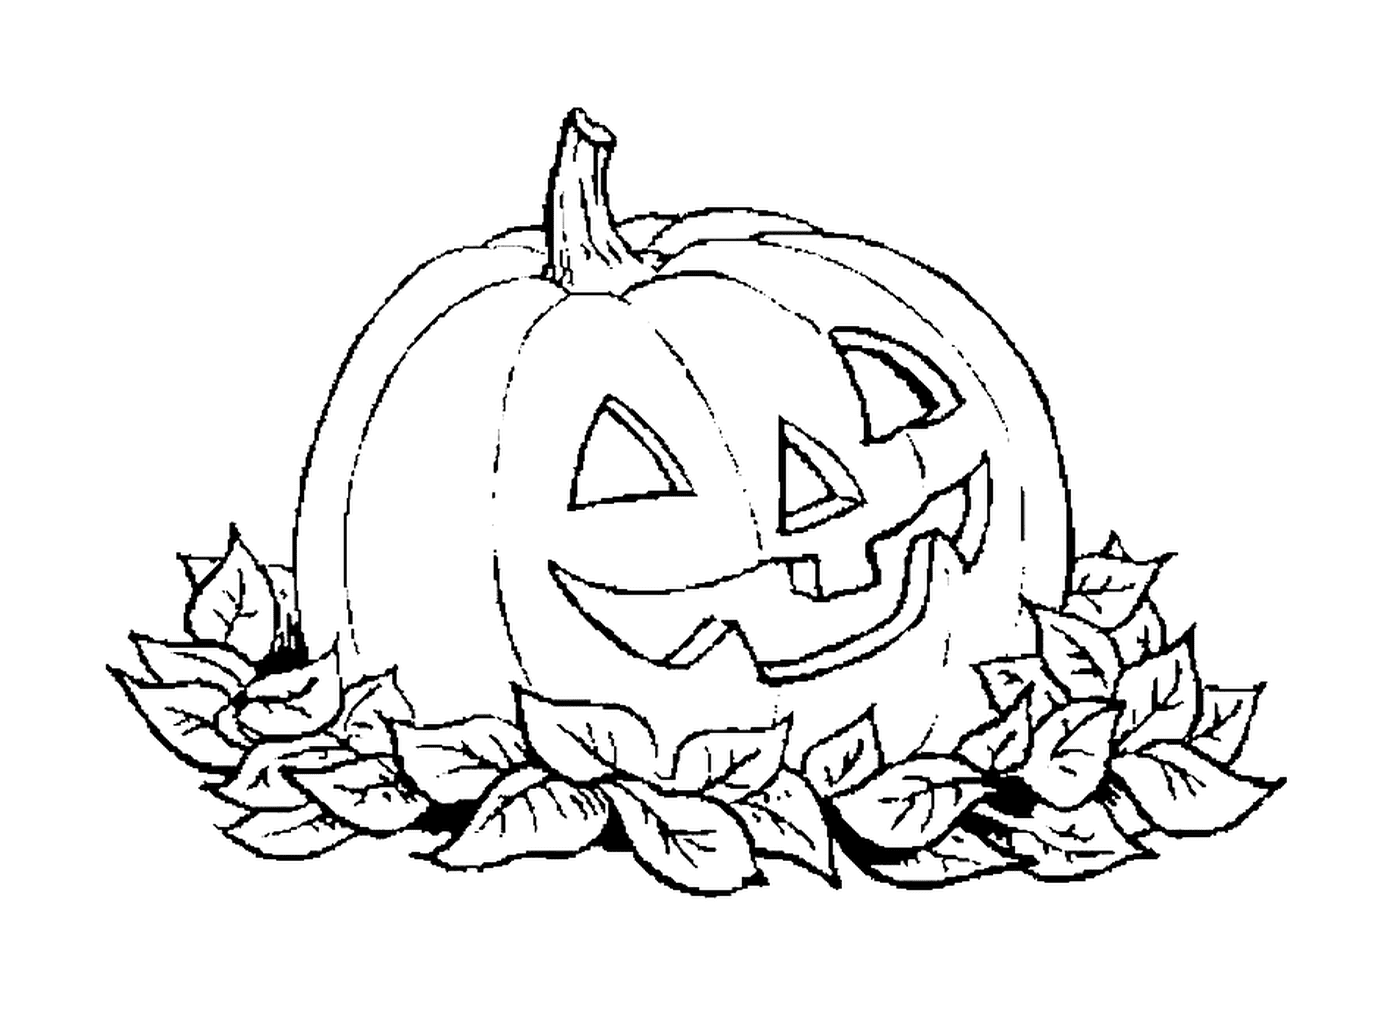  Calabaza de Halloween con hojas muertas 